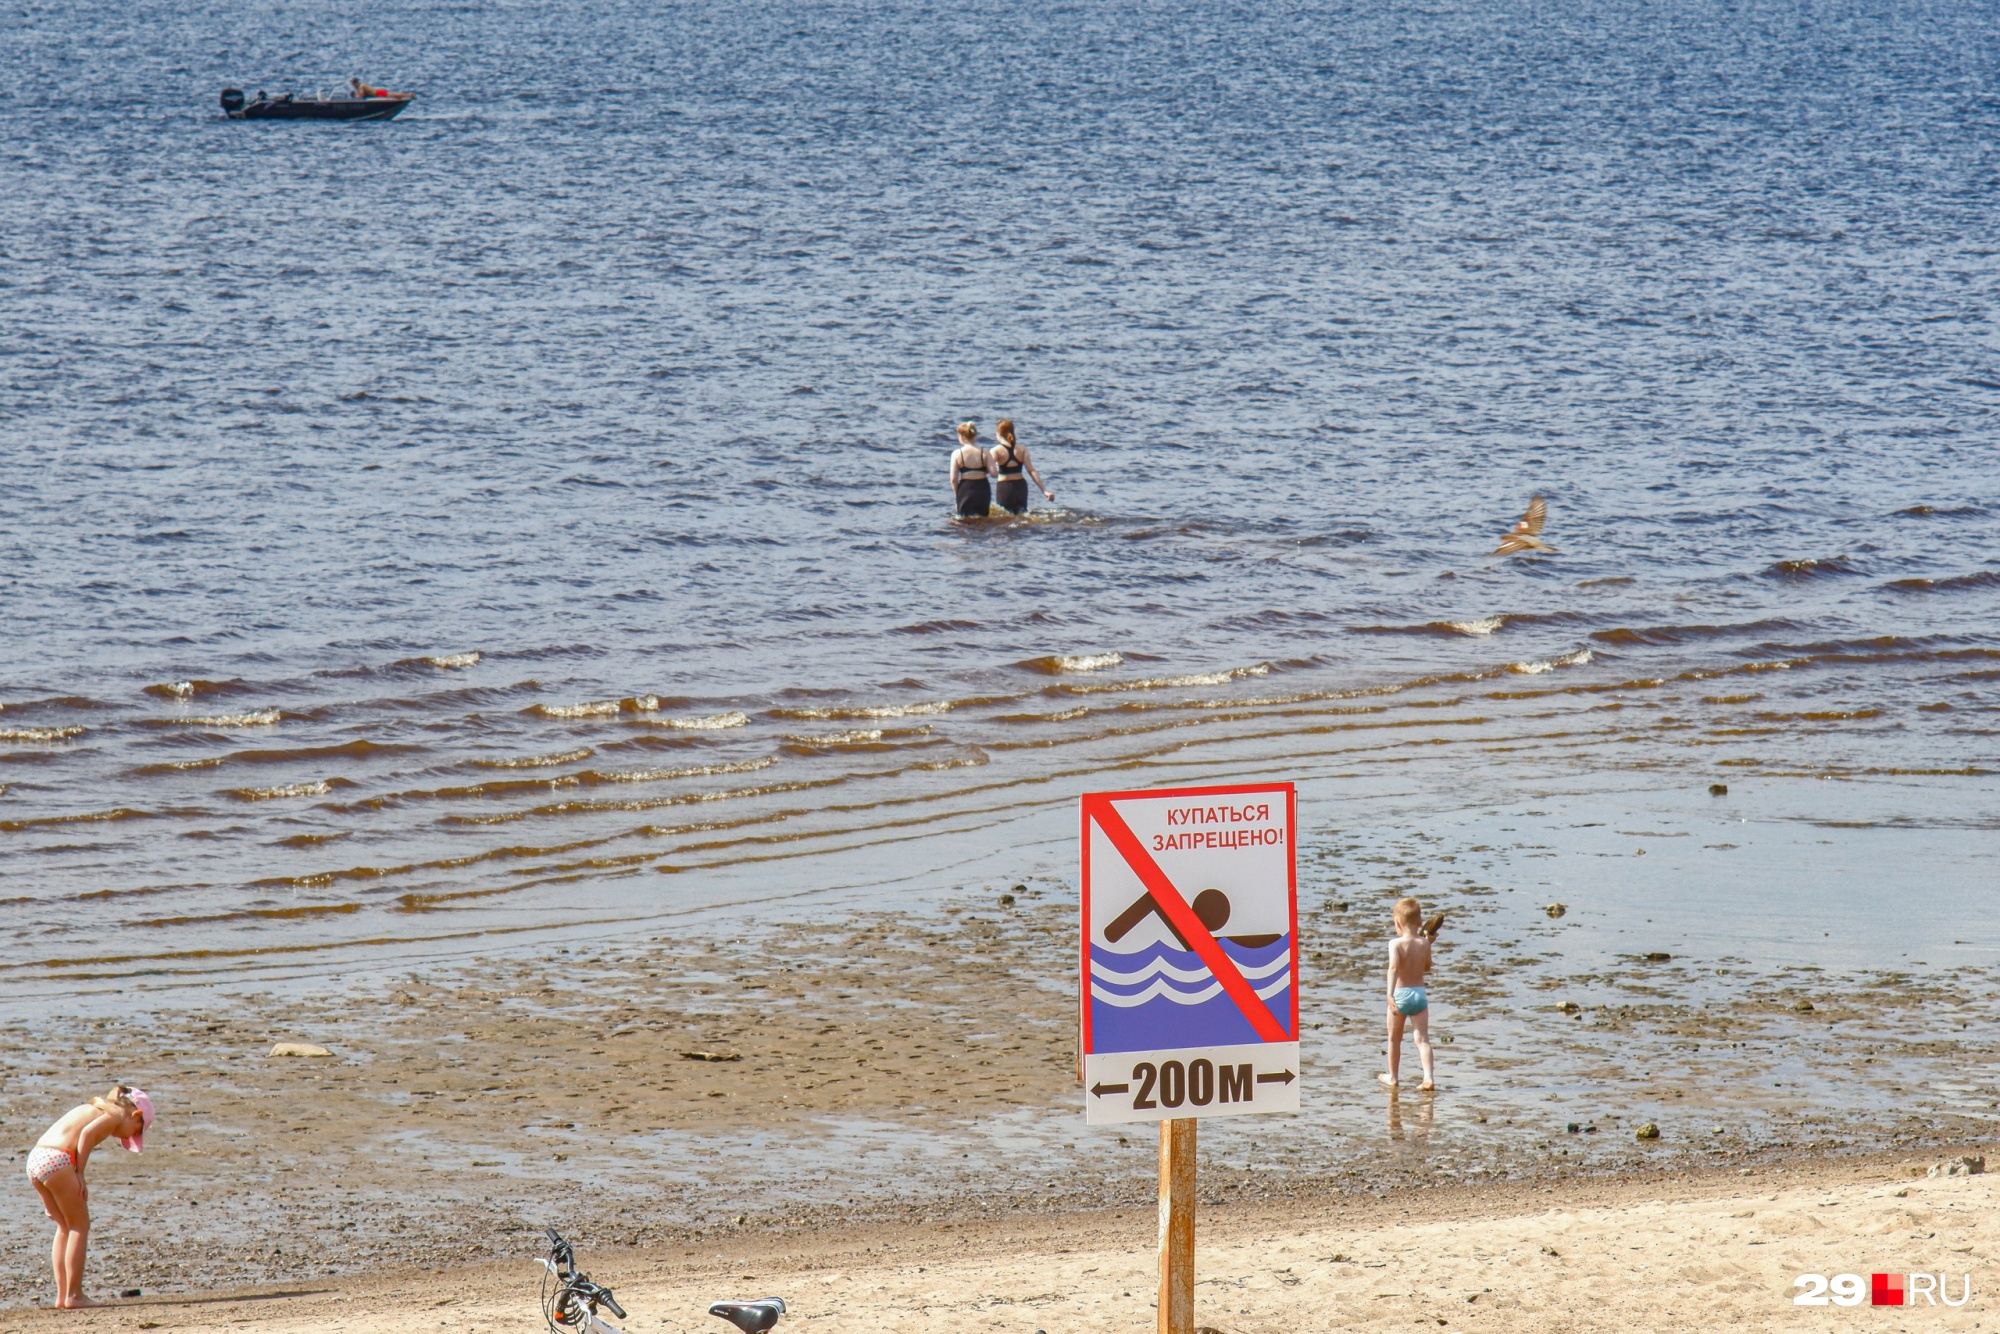 Хотя купаться запрещено, горожане всё равно не против помочить ножки